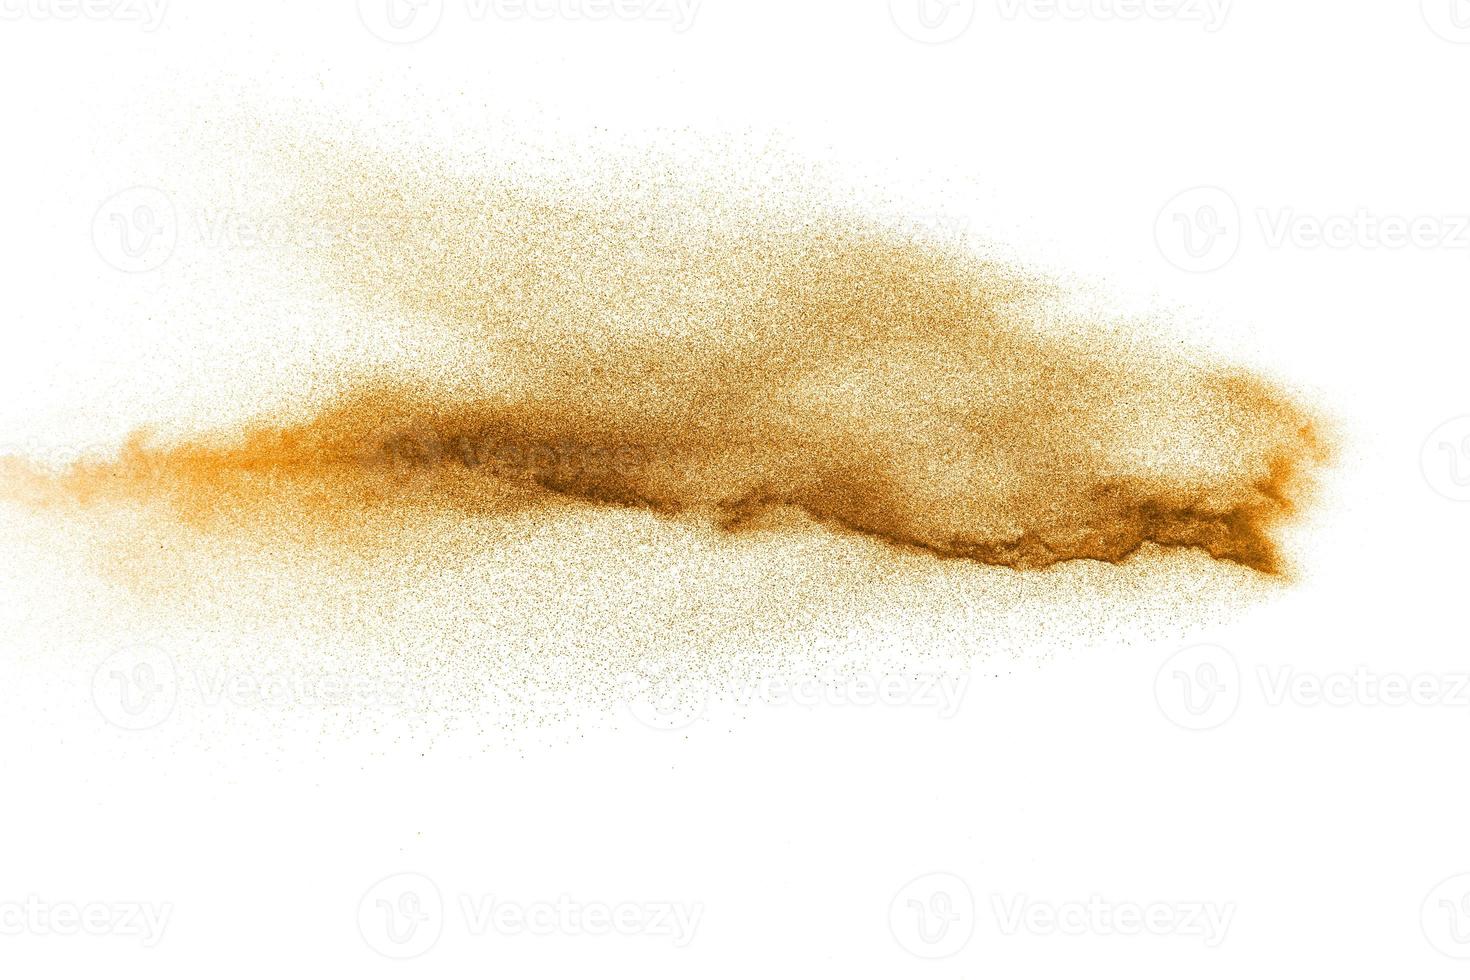 esplosione di polvere arancione astratta su sfondo bianco. congelare il movimento di schizzi di particelle di polvere arancione. foto